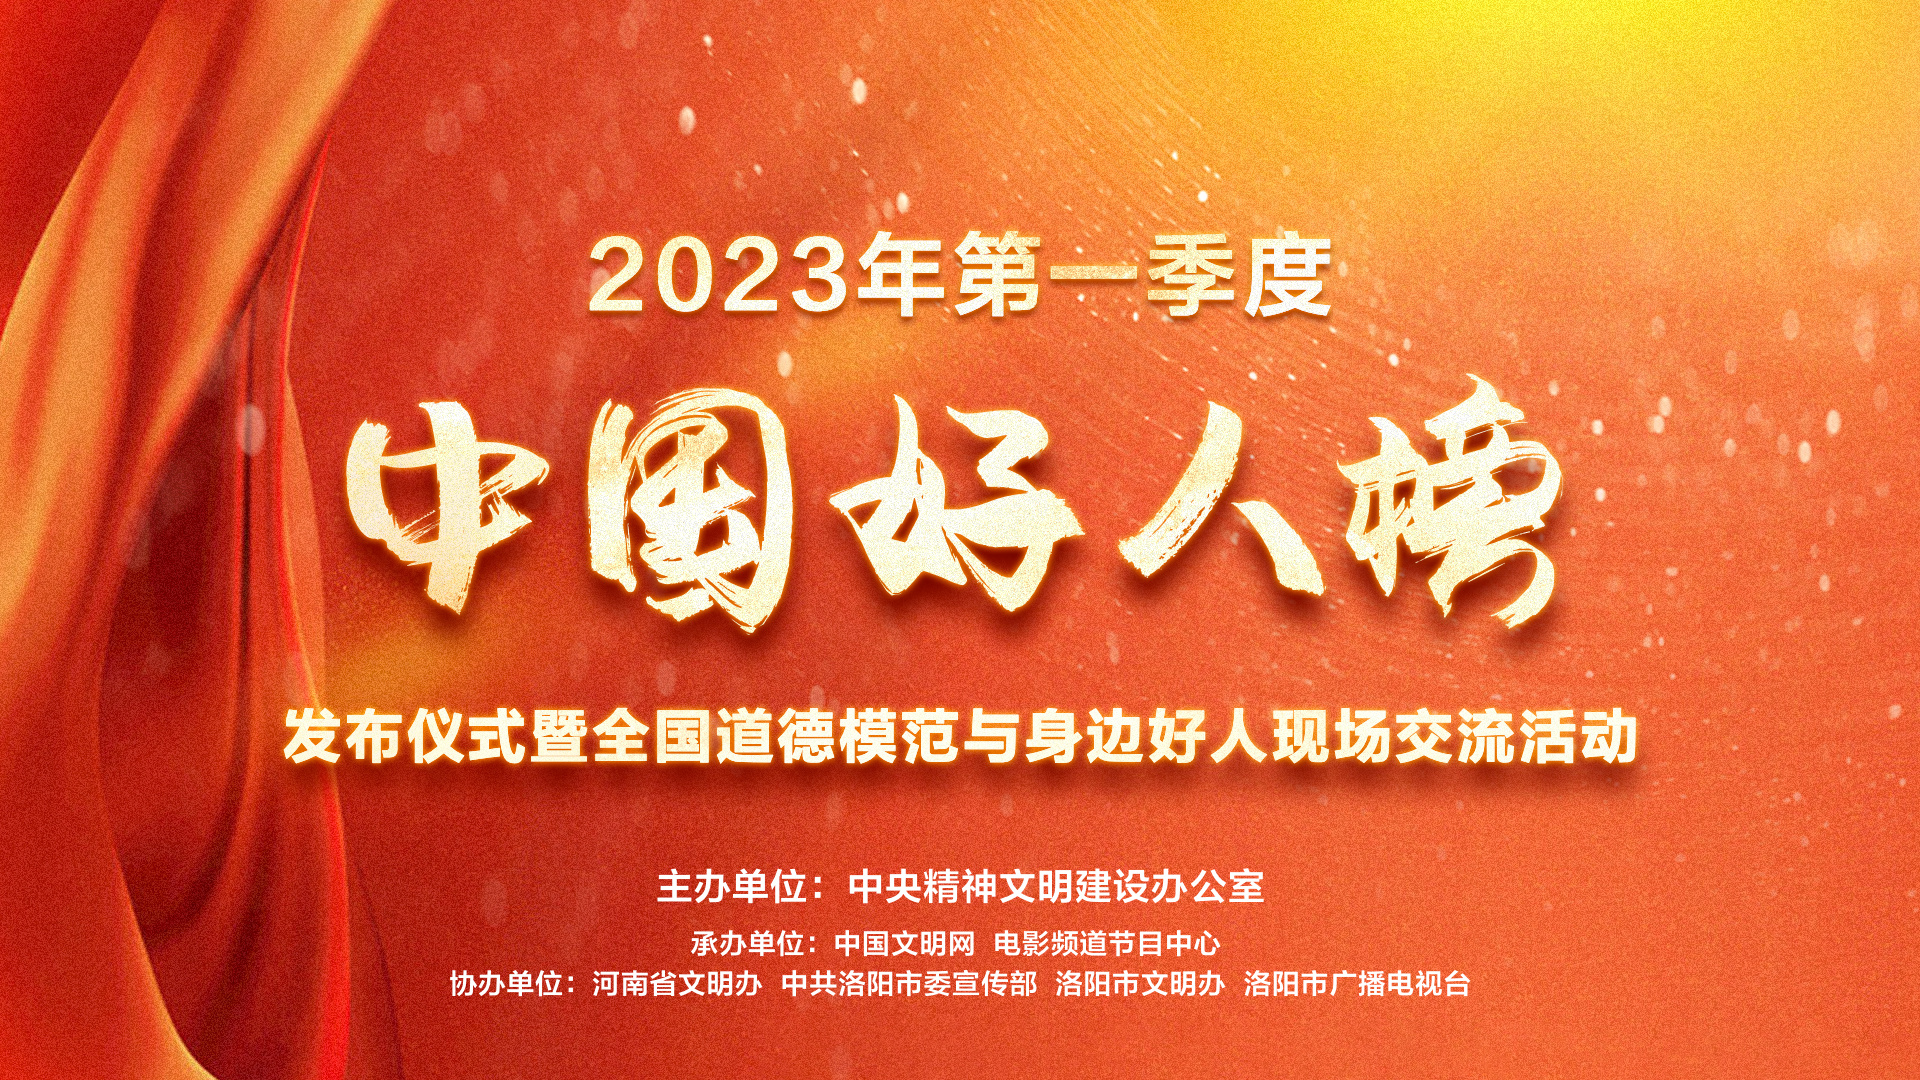 电影频道6.21直播2023第一季度“中国好人榜”